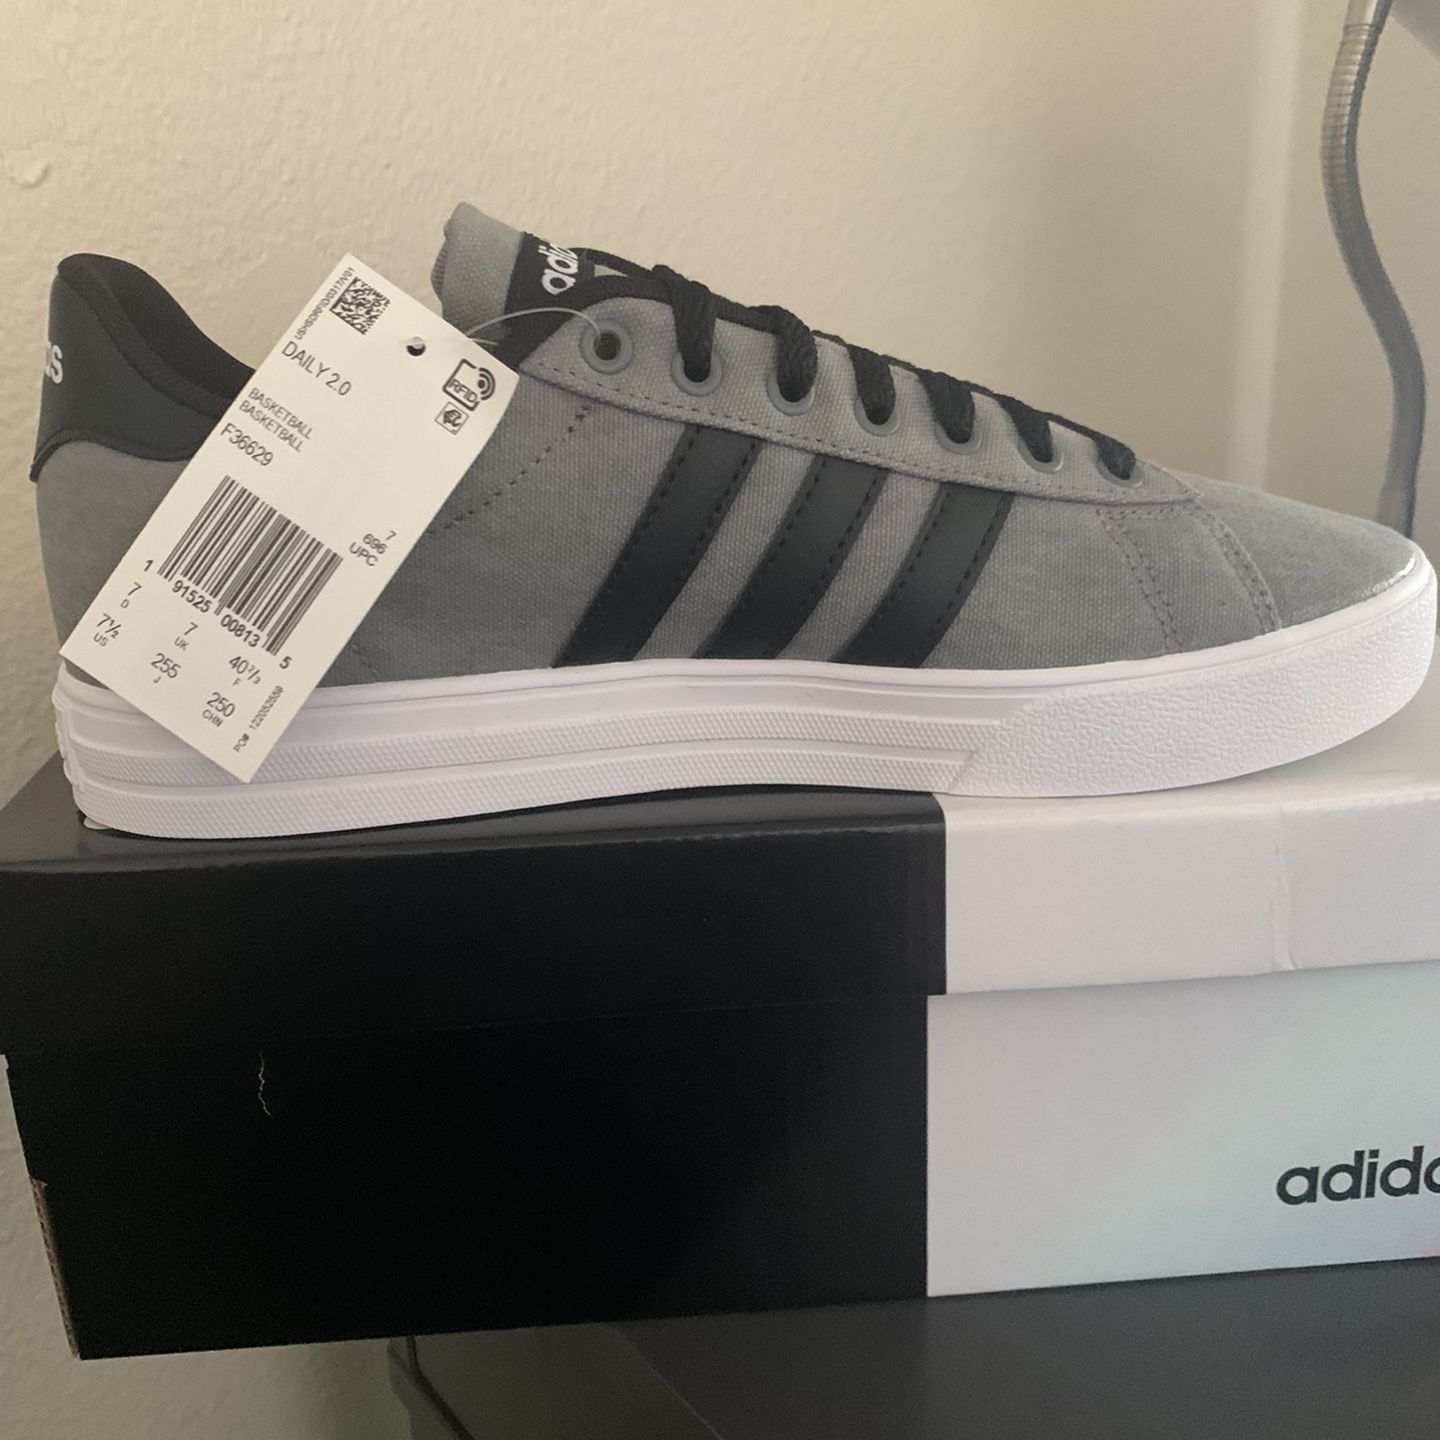 Adidas Grey & Black Brand New Size 7.5